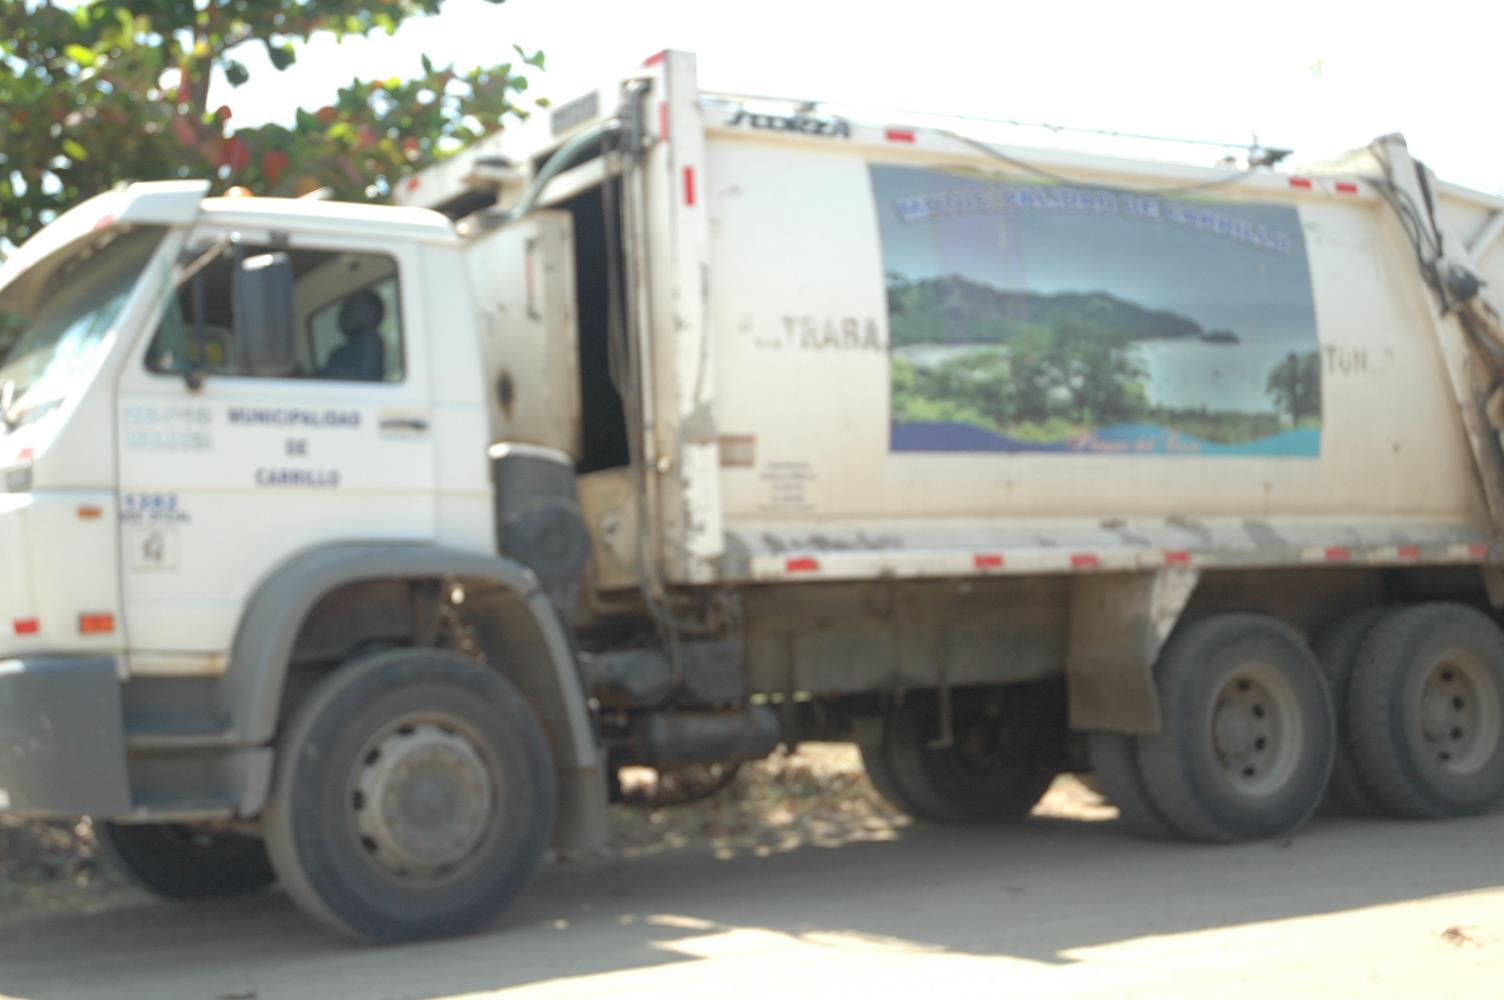 Municipalidad del Cantón de Carrillo, no está recolectando los desechos sólidos del Cantón